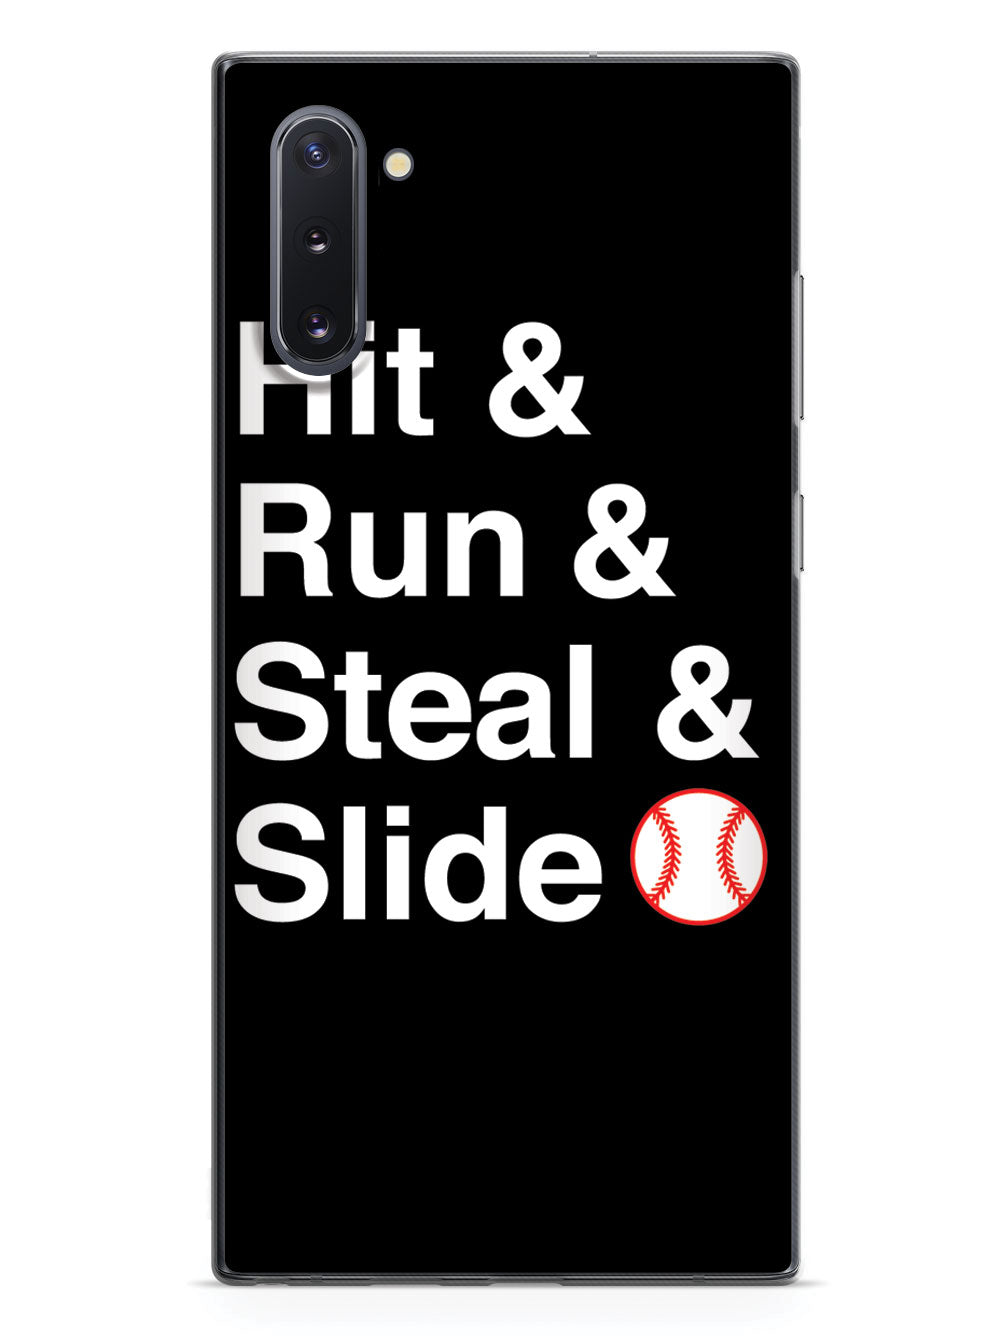 Hit & Run & Steal & Slide - Baseball Case